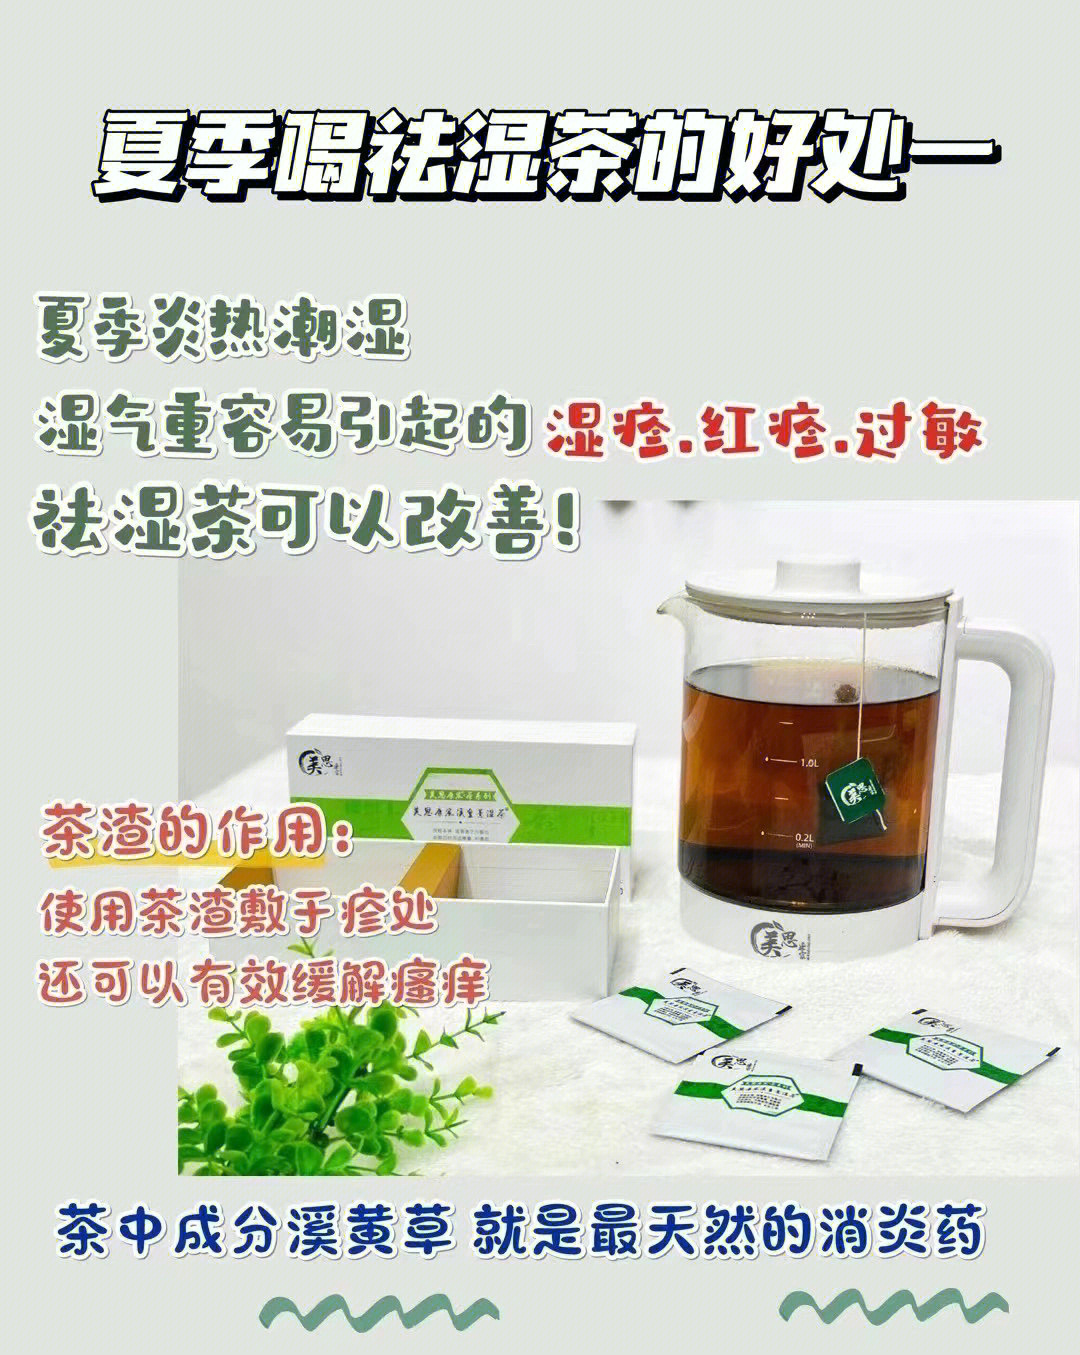 夏季喝祛湿茶的好处266坚持喝祛湿茶排出体内湿气,增强免疫力!